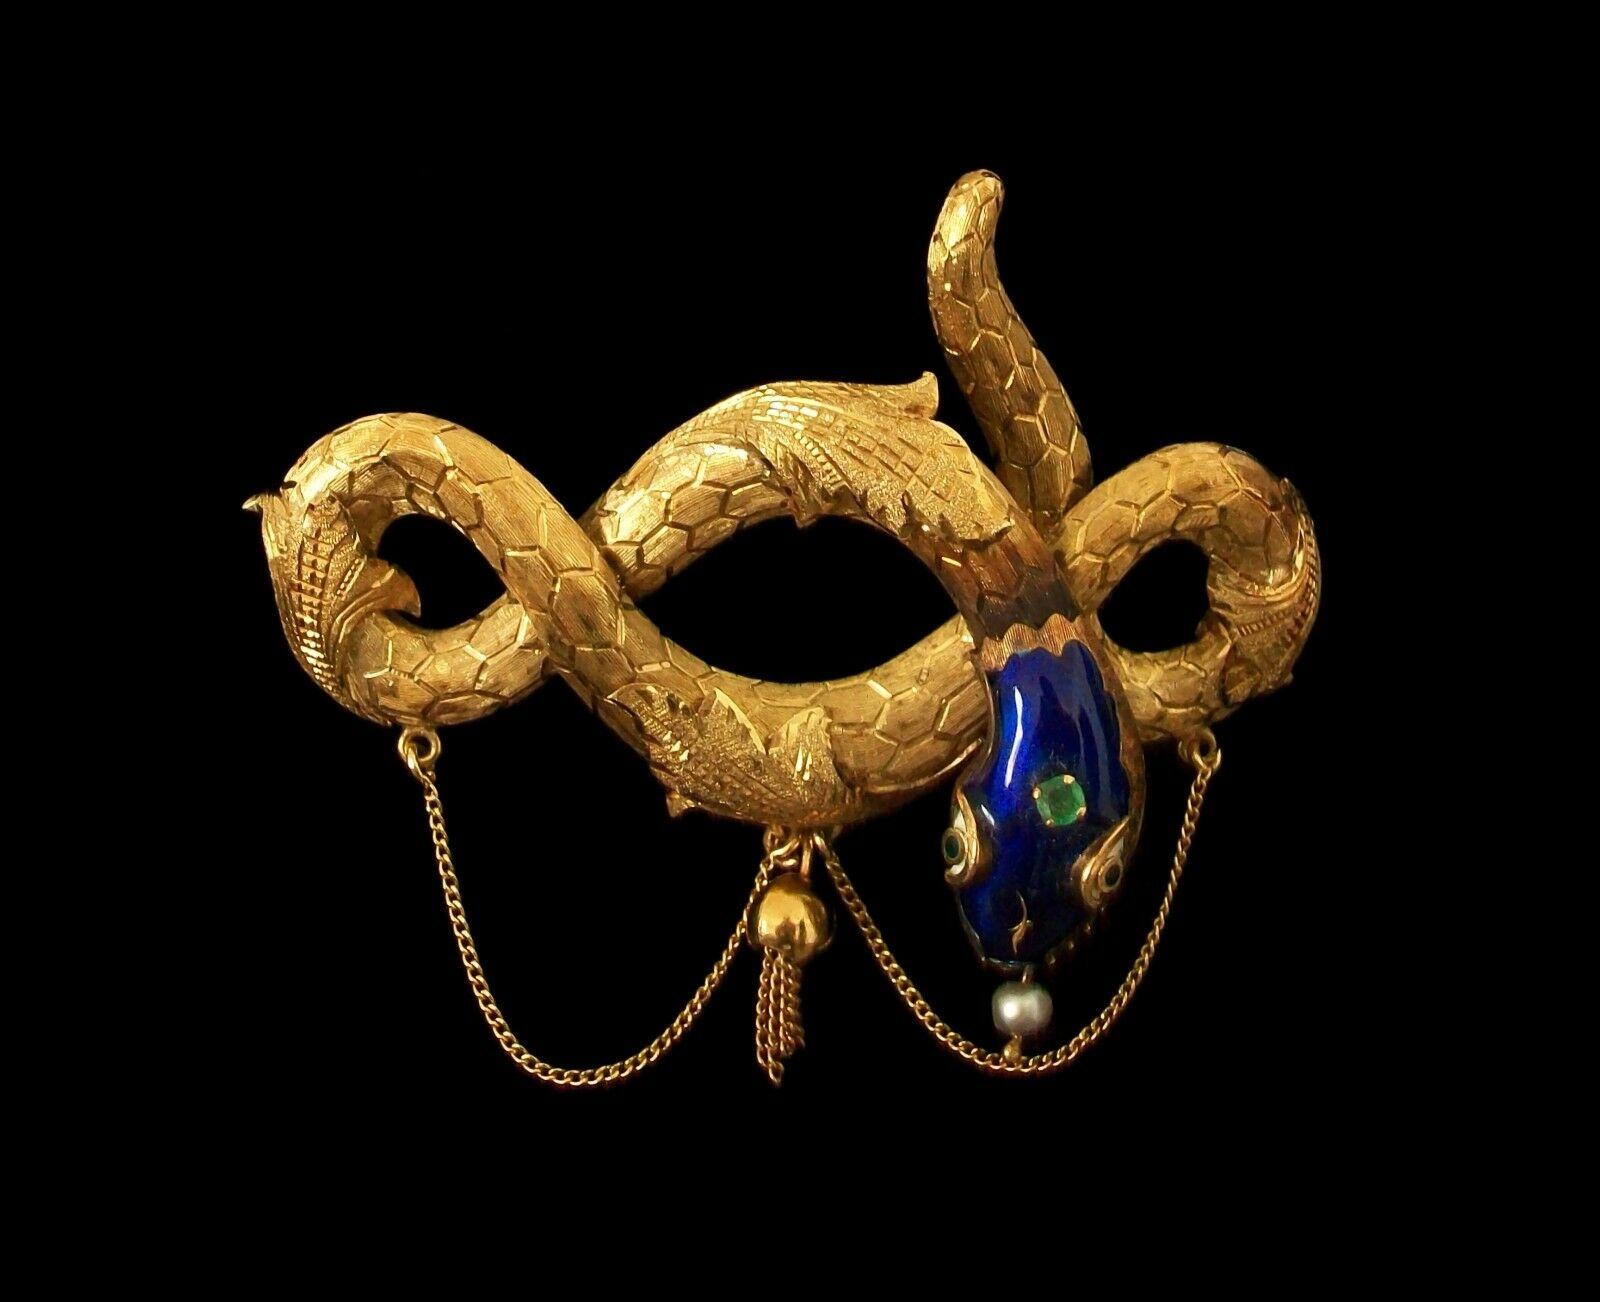 Antique broche serpent/serpent en or jaune 18 carats de l'époque Victorienne/Napoléon III - finition fine et élaborée en or ciselé sur le corps avec des détails de chaîne et de glands - fait main avec tête en émail bleu et yeux en émail contrastant